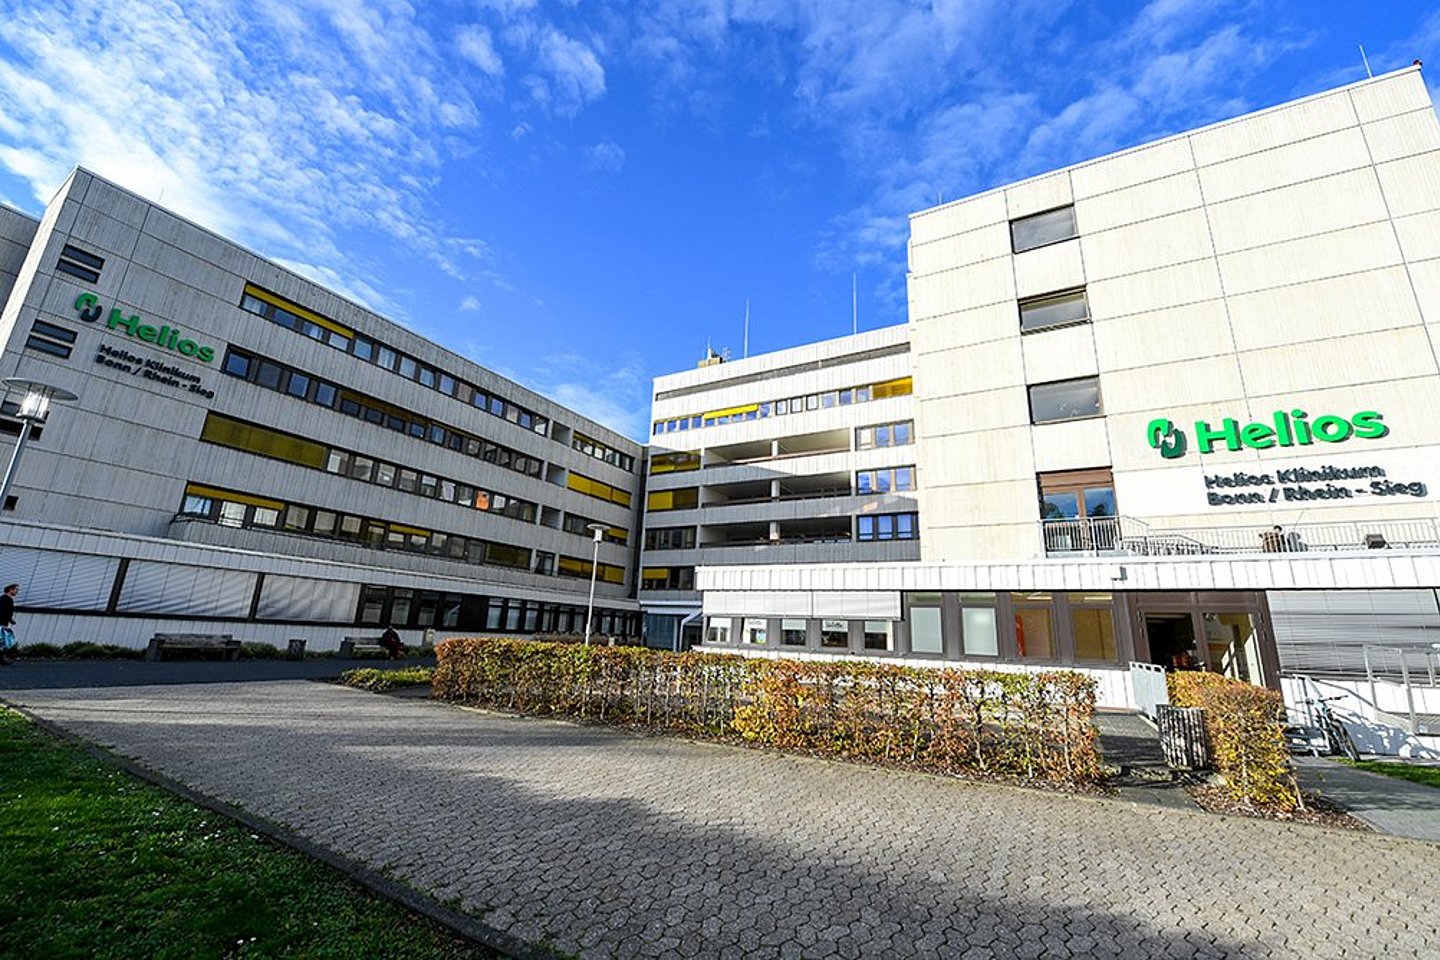 Helios Hospital Bonn/Rhein-Sieg